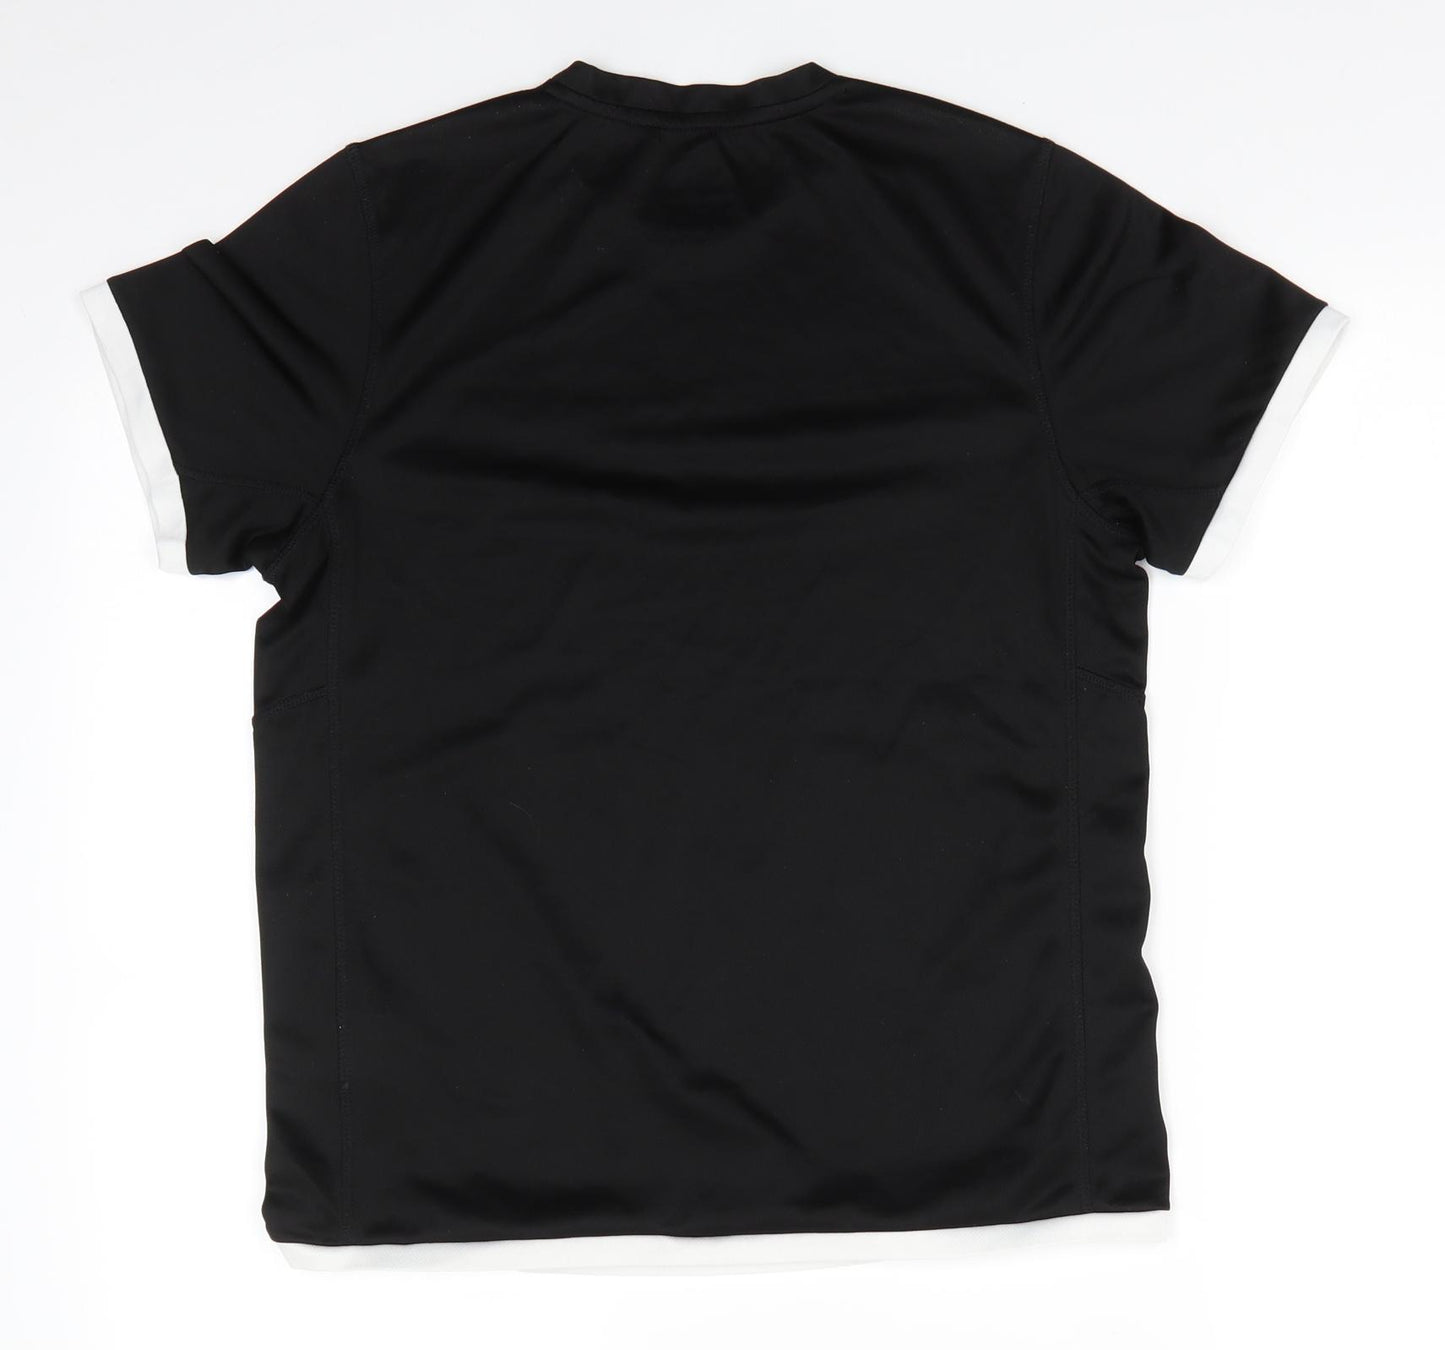 Slazenger Mens Black Animal Print Polyester Basic T-Shirt Size XS Round Neck Pullover - Slazenger CoolPass White trim arms & hemline